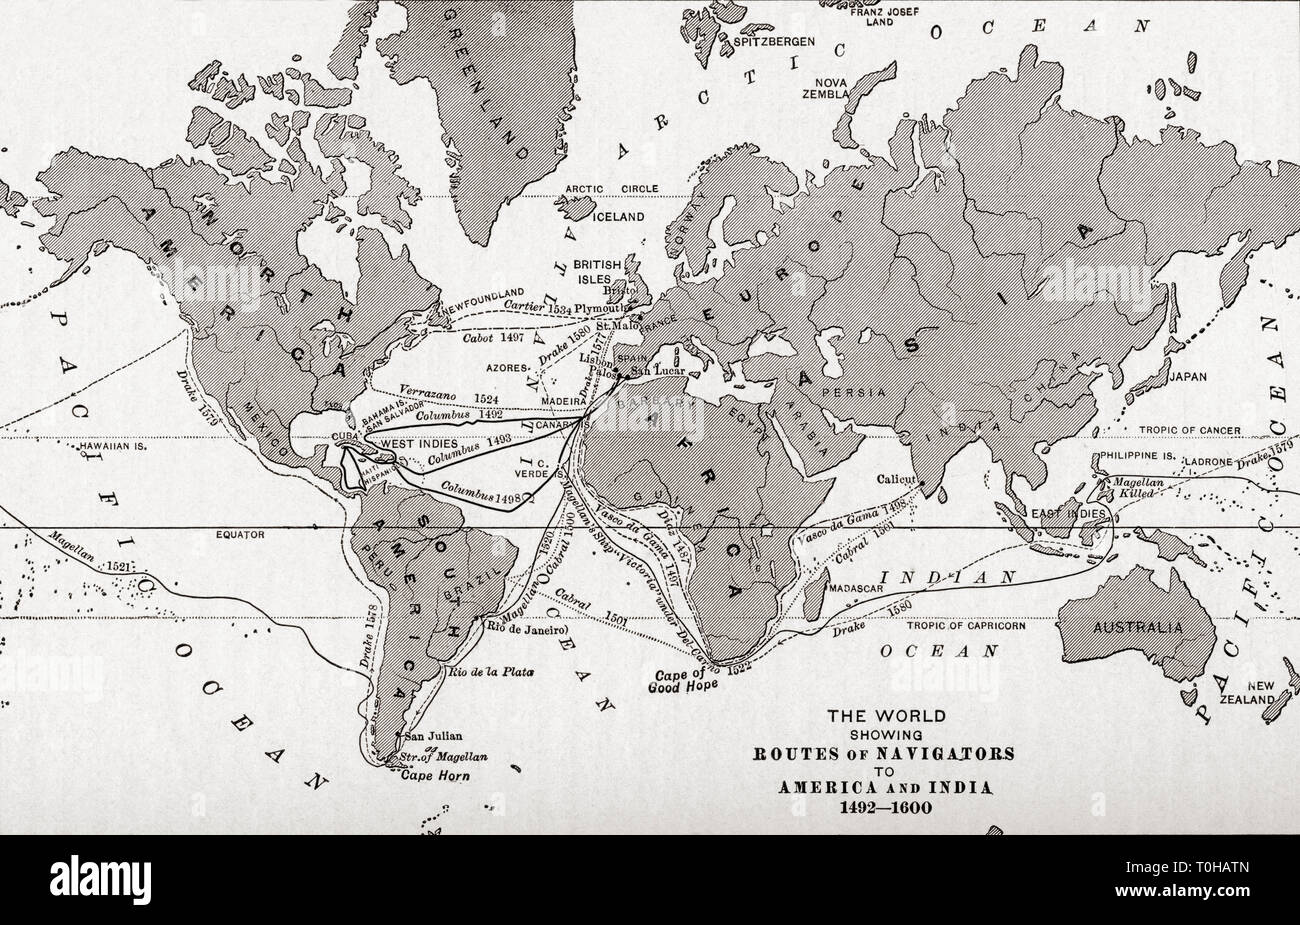 Weltkarte mit Routen von navigatoren nach Amerika und Indien Stockfoto